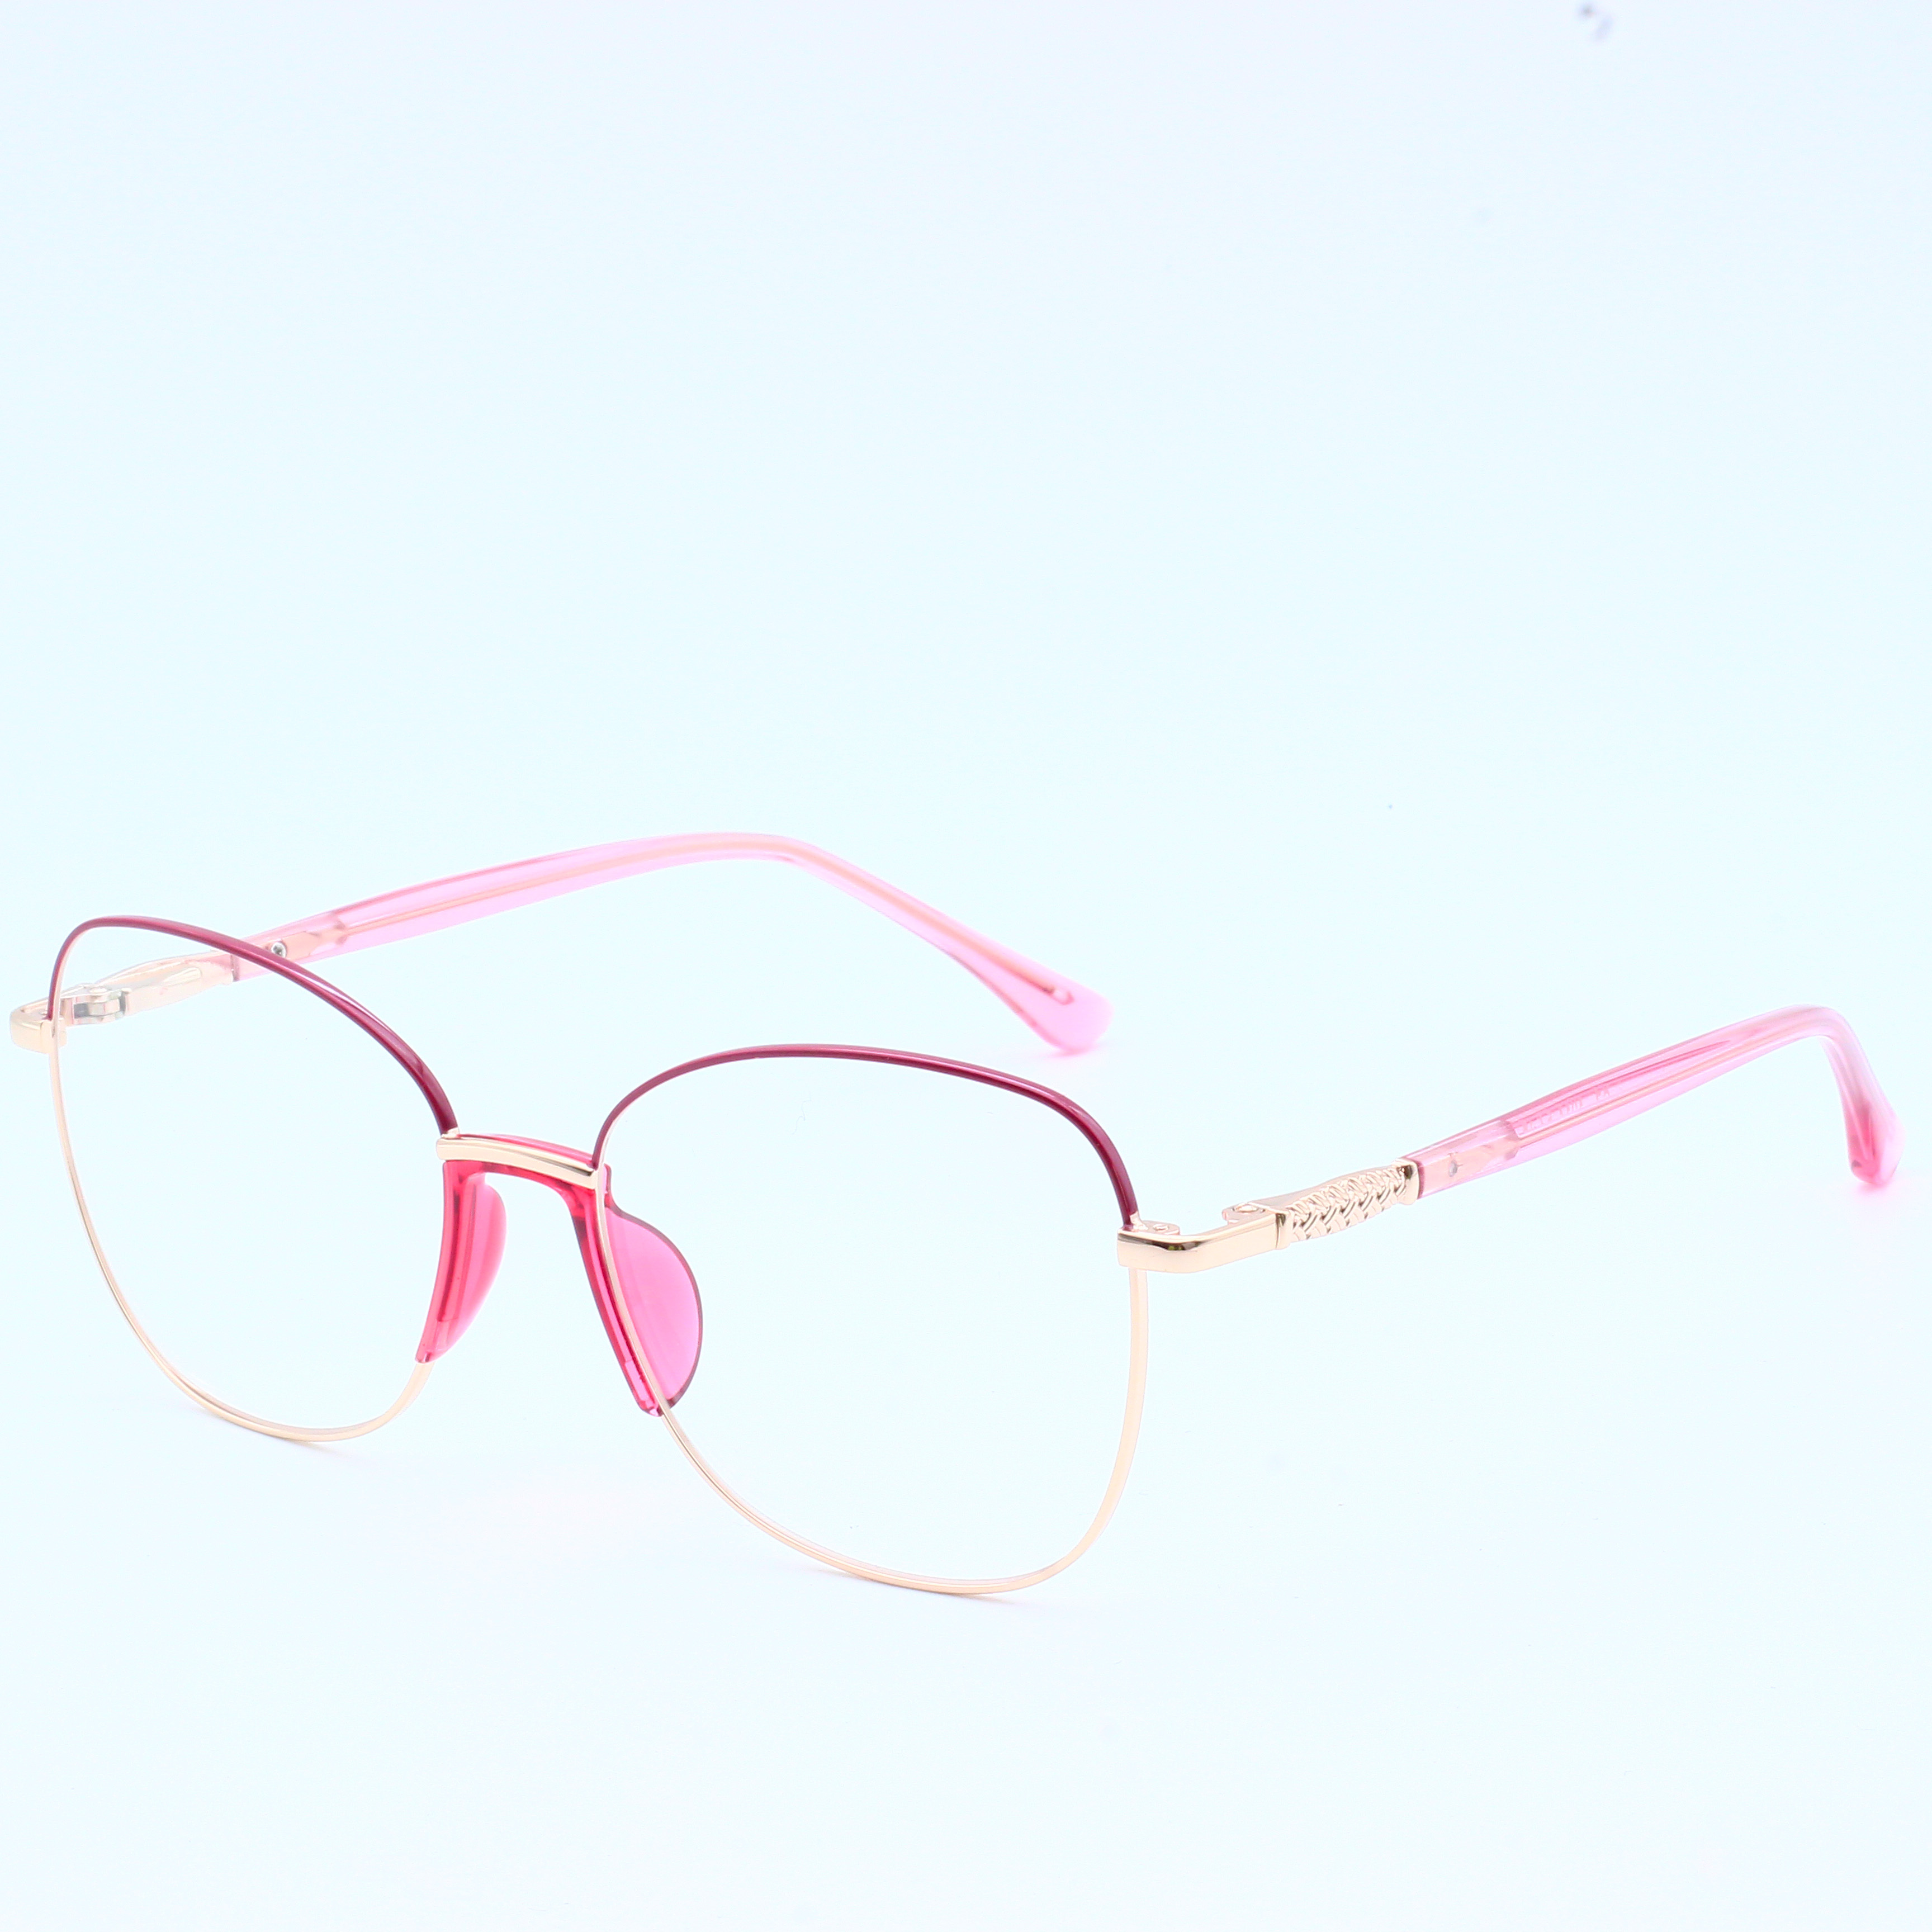 Designer Brand Metal Wholesale Eyeglasses River Optical Frame (8)